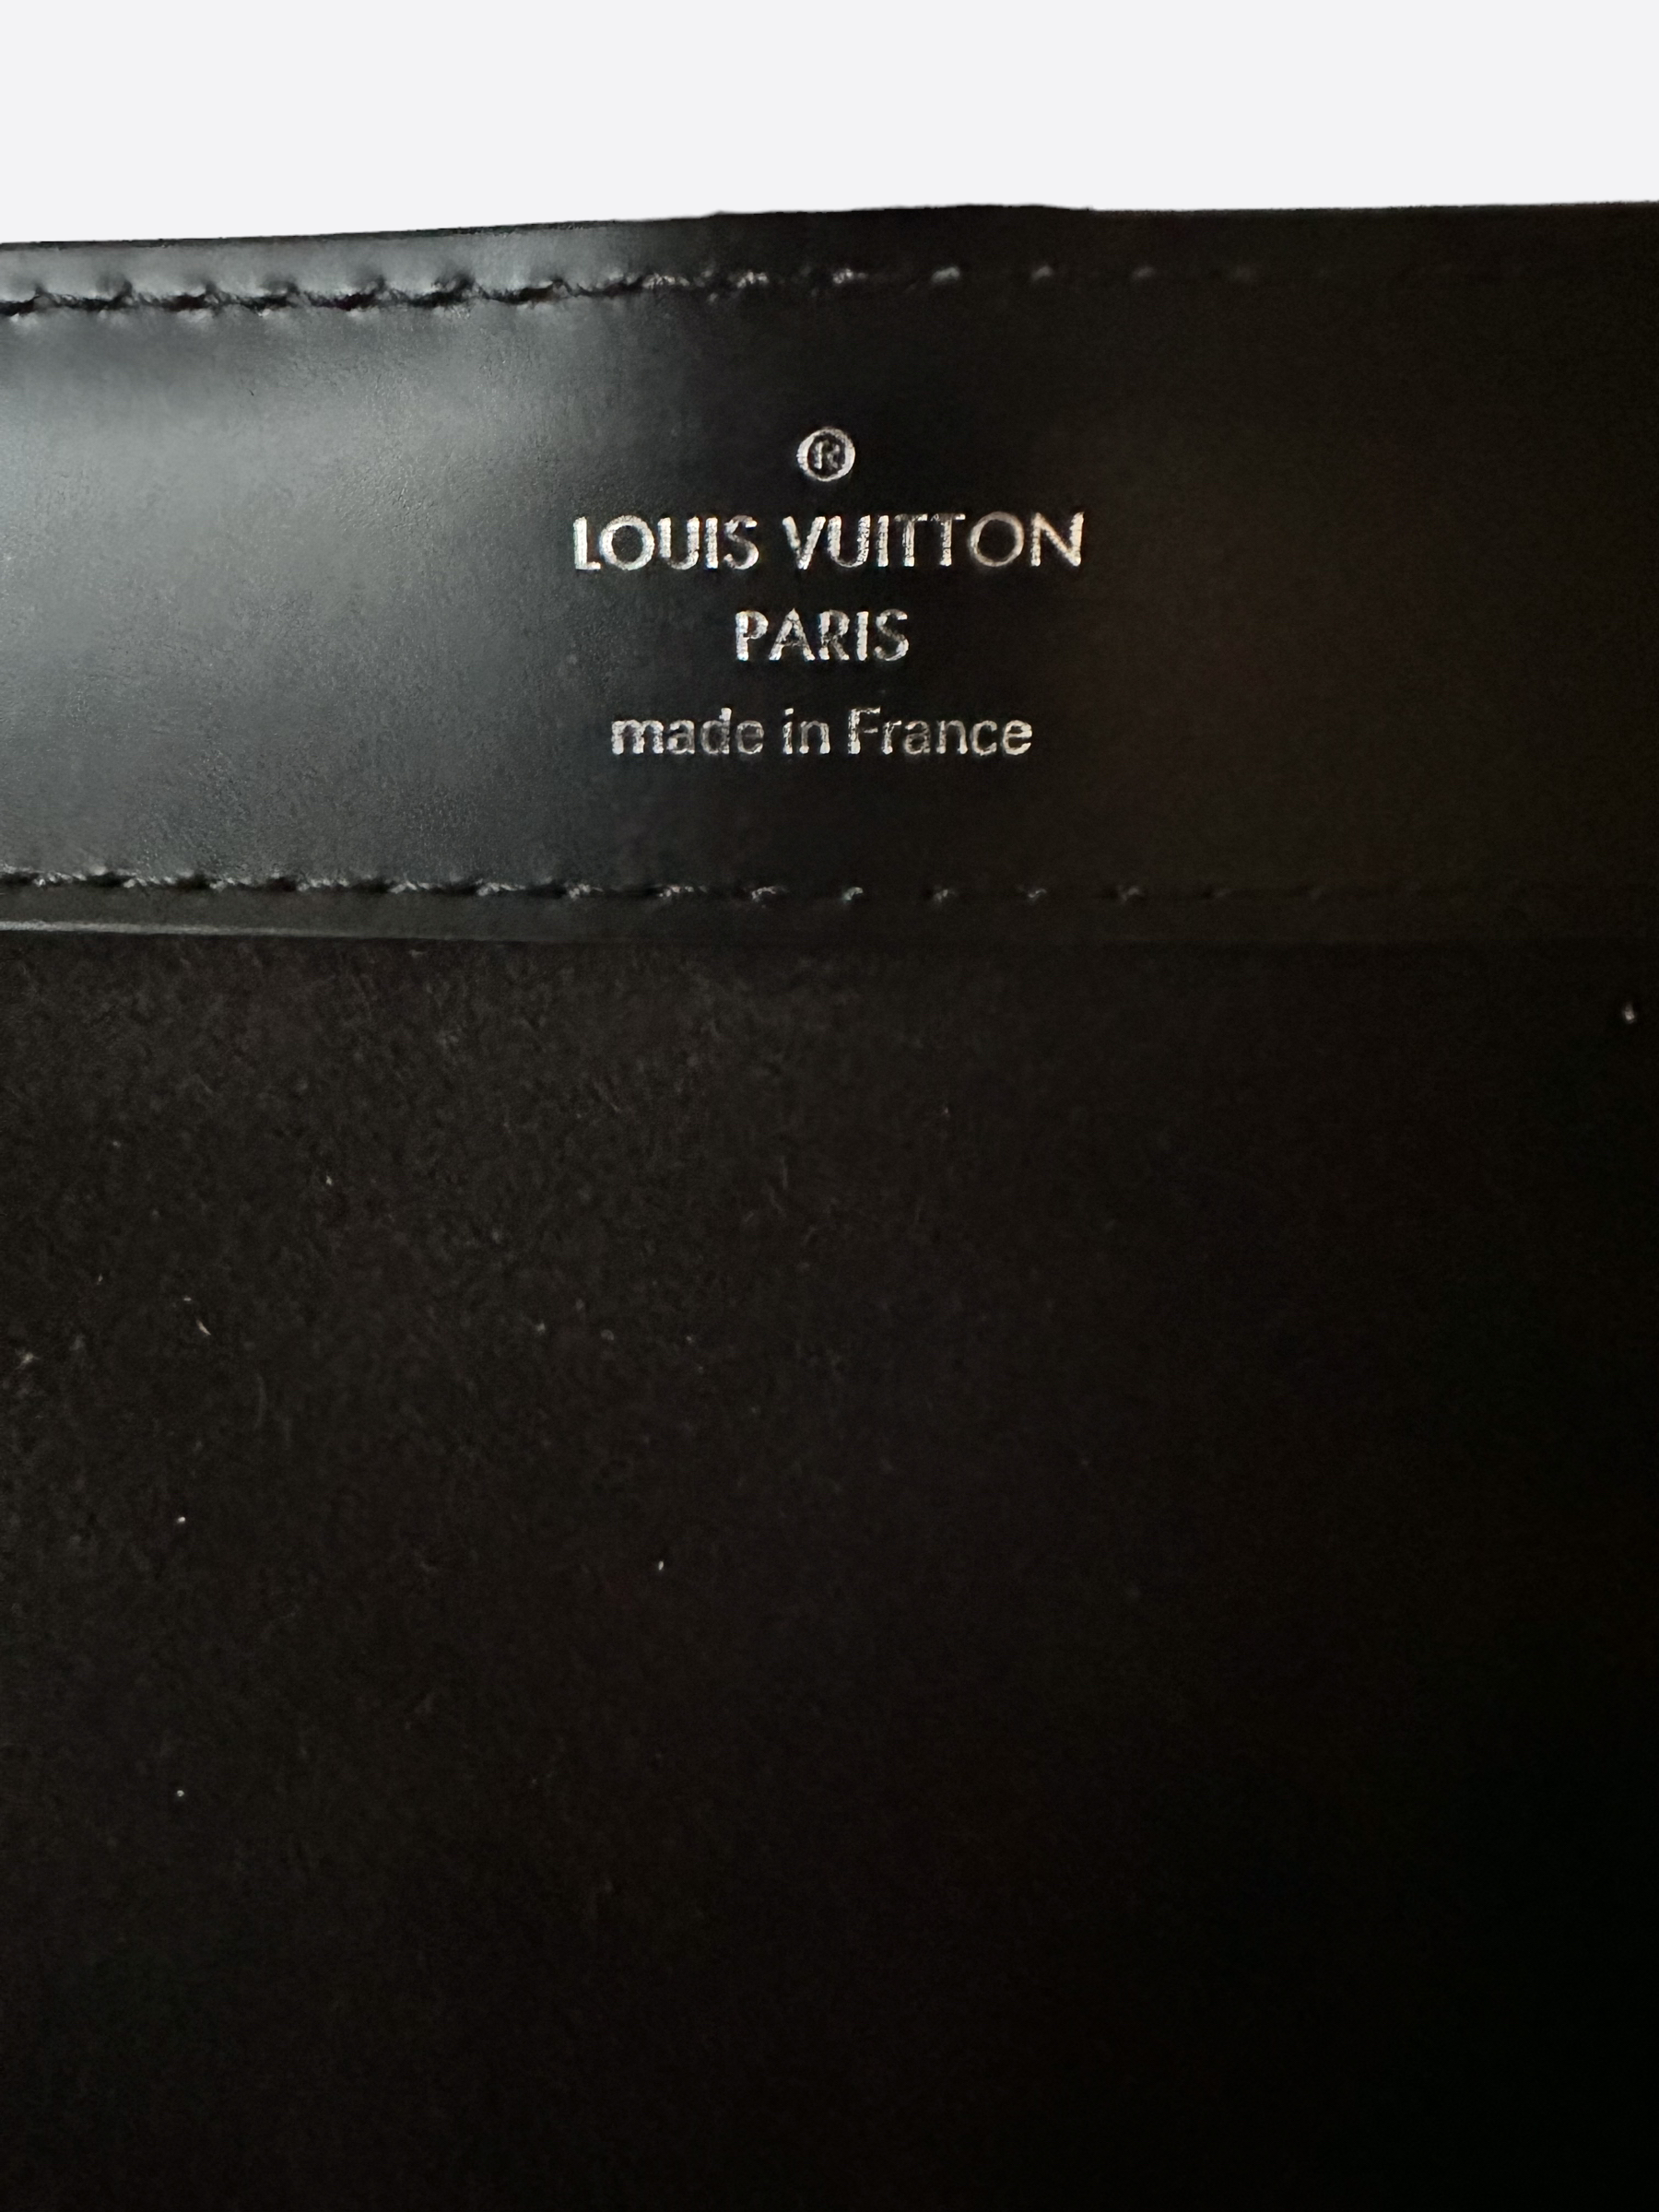 Louis Vuitton 3 Watch Roll - Damier Graphite